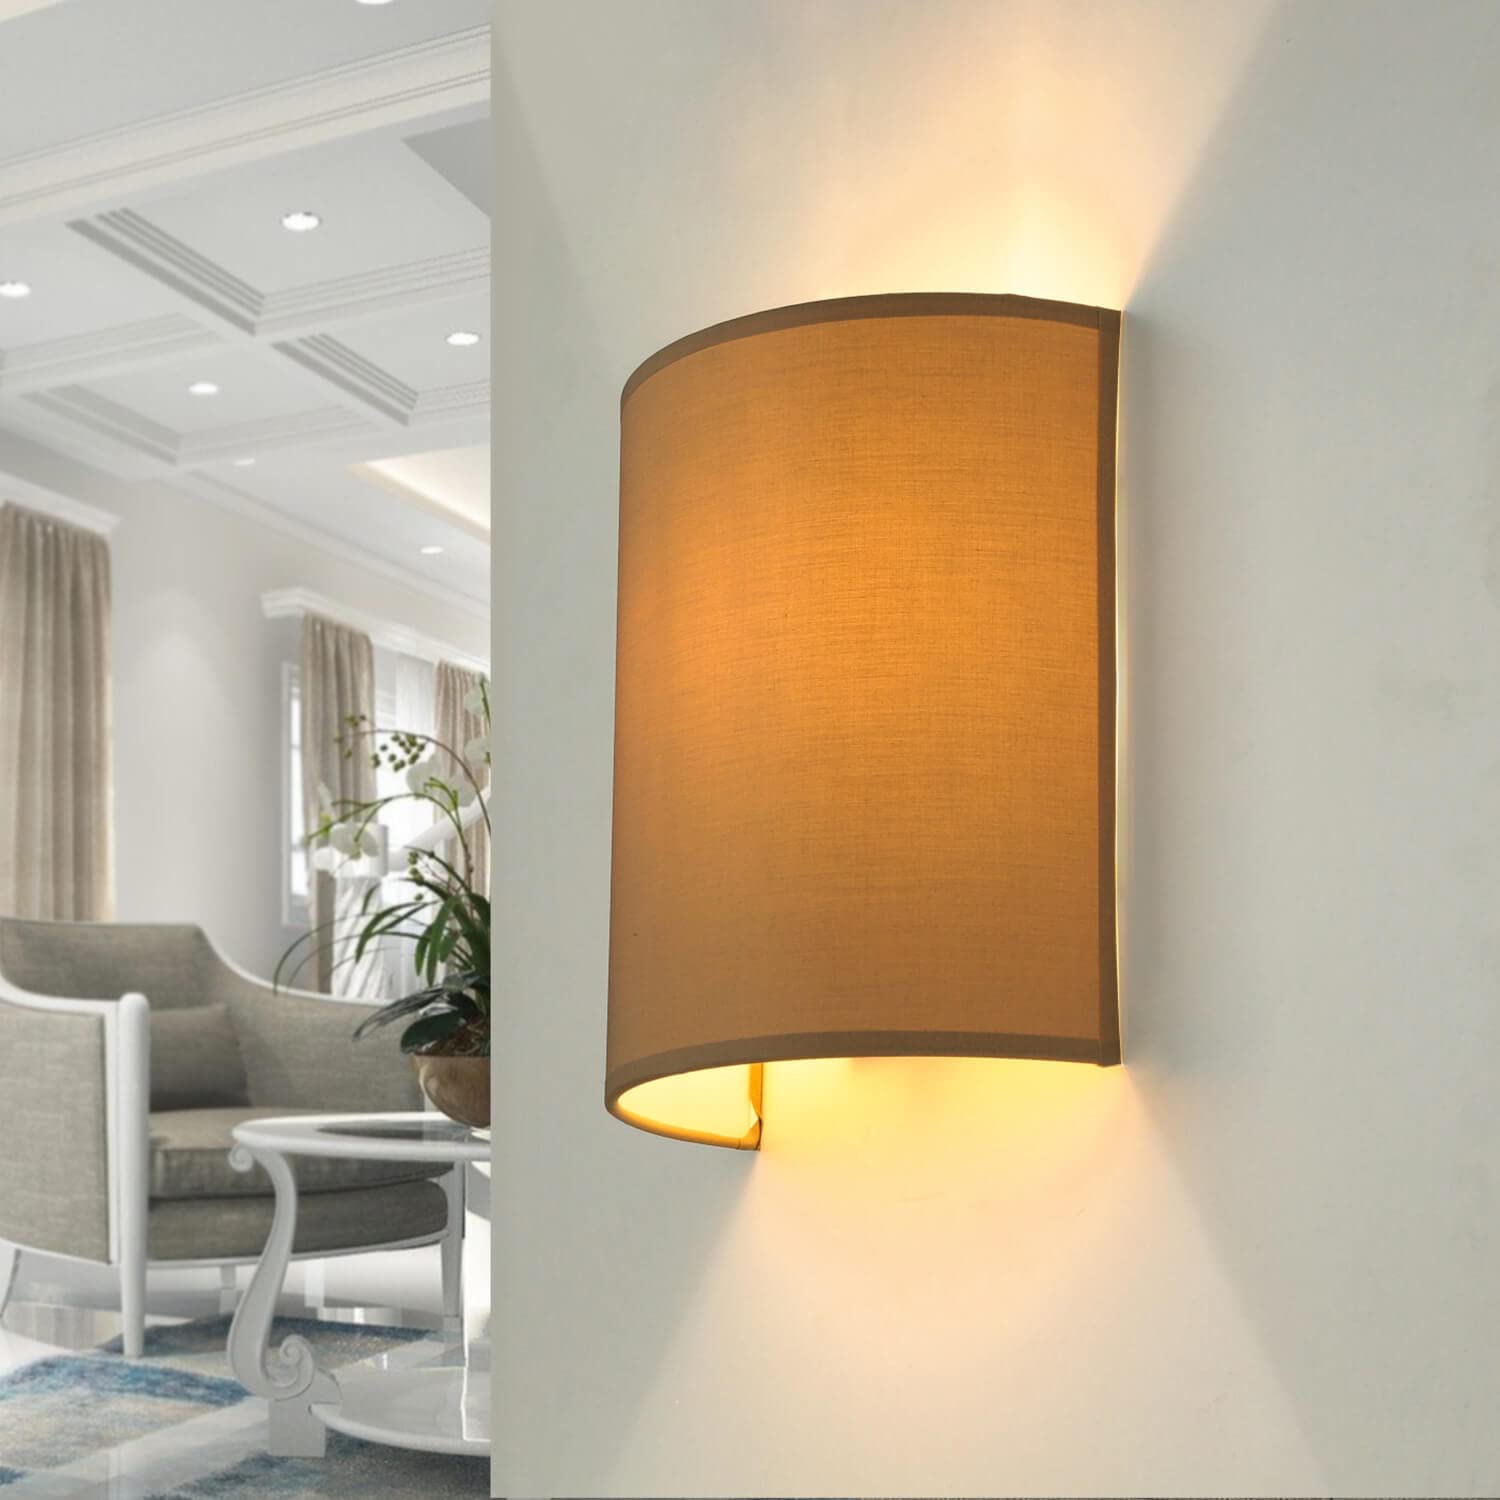 Elegante Wandleuchte in braun inkl. 1x 10,5W E27 LED Wandlampe aus Stoff für Wohnzimmer Schlafzimmer Lampe Leuchten Beleuchtung